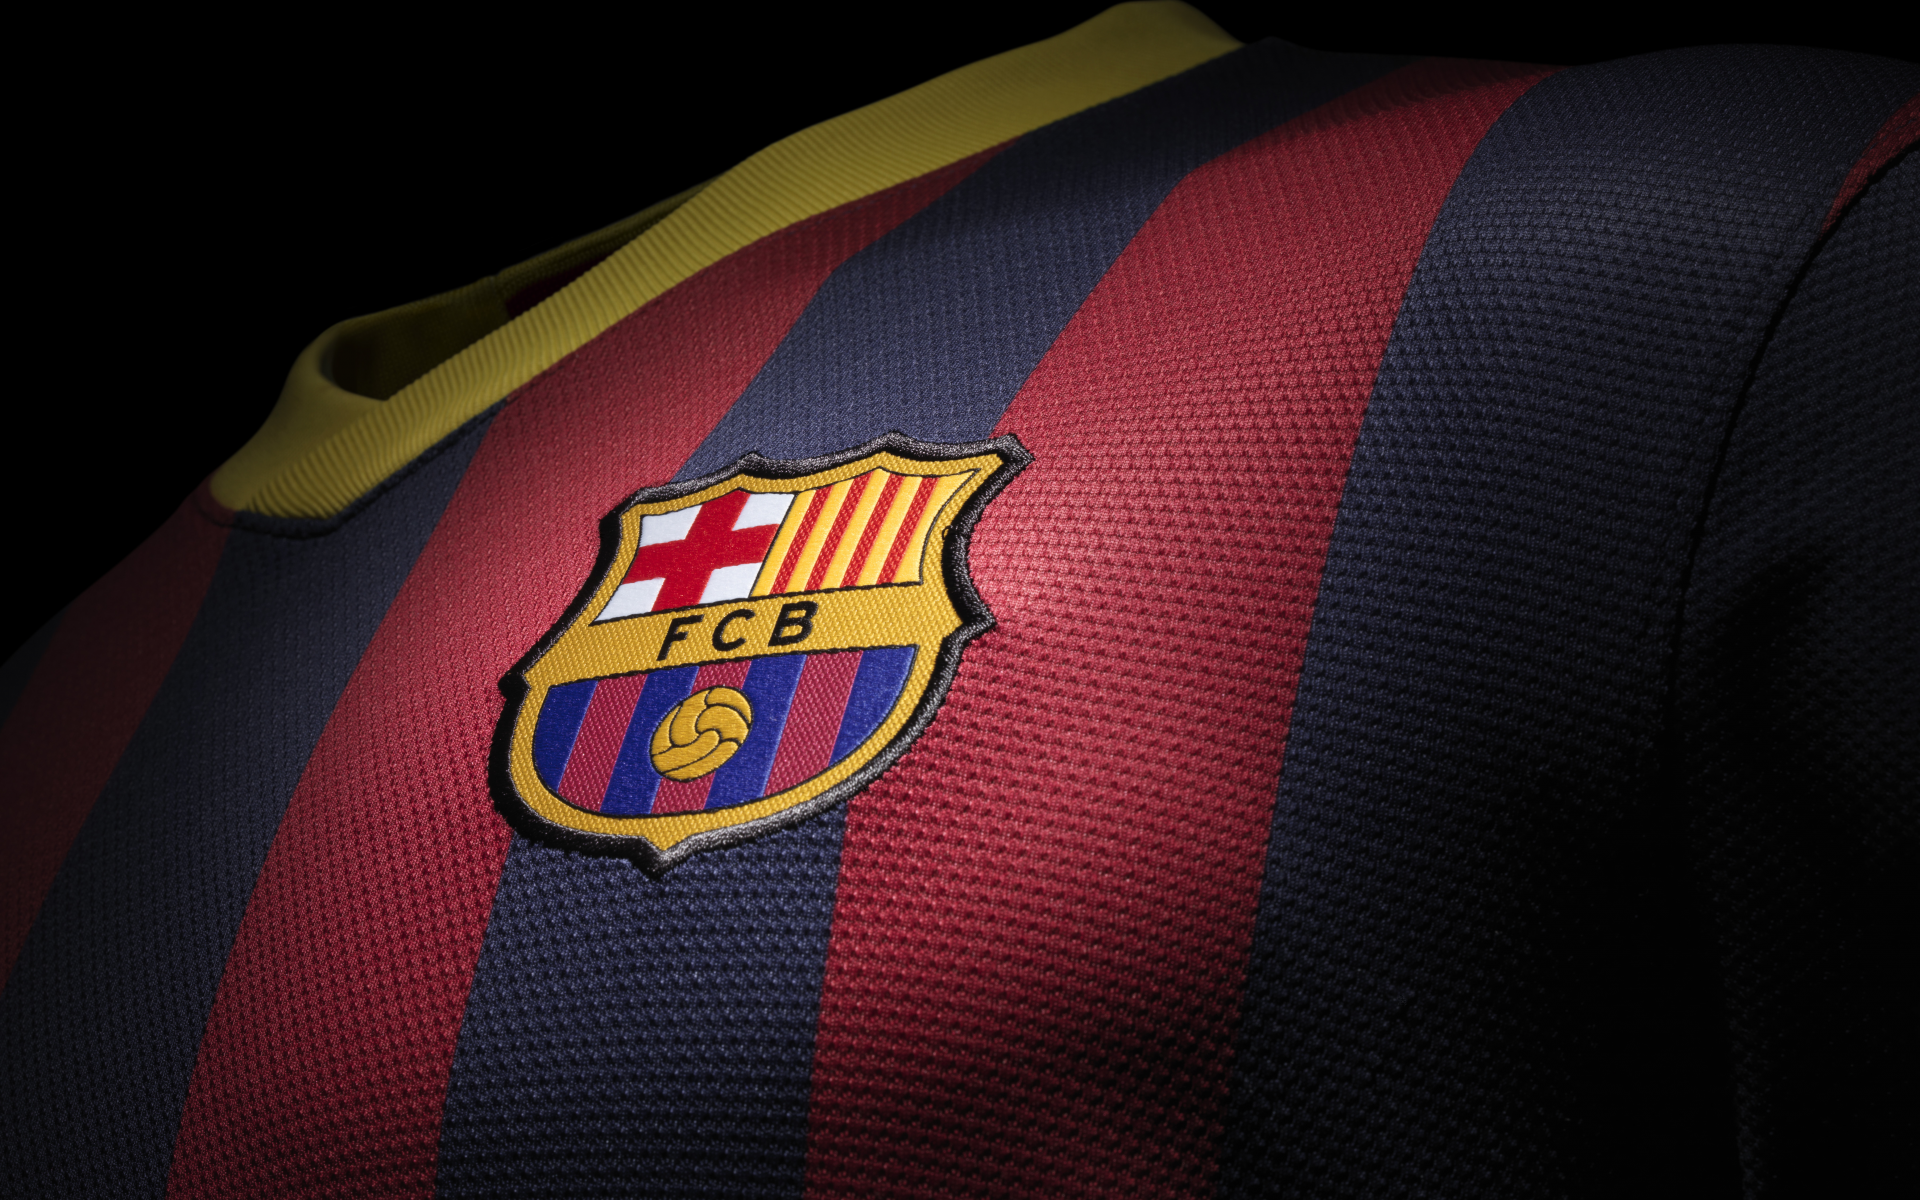 фк барселона, клуб, fc barcelona, new kit, новая форма, 201314